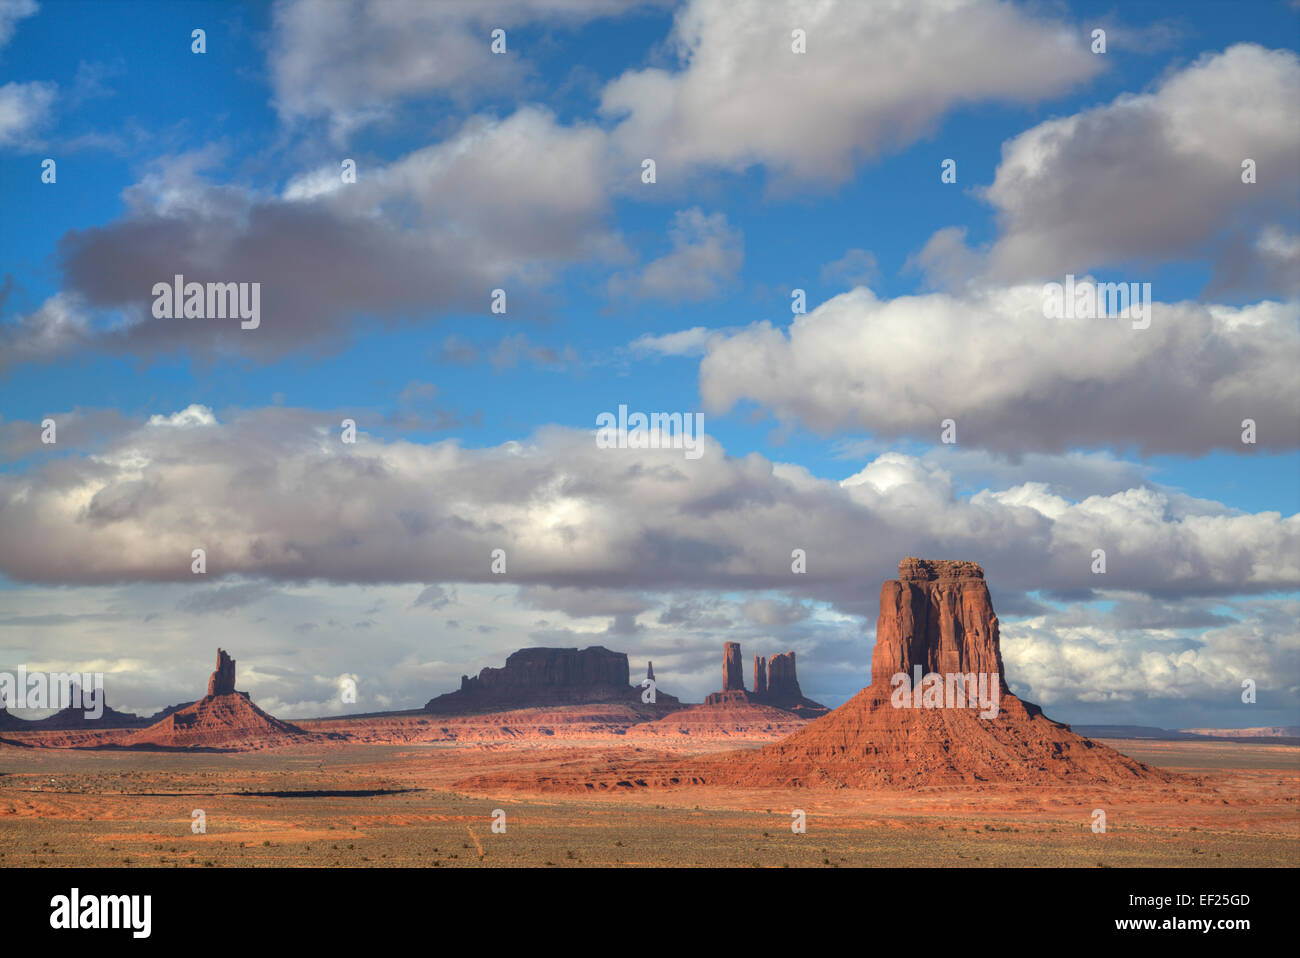 Aperçu de la fenêtre du nord donnent sur, Monument Valley Navajo Tribal Park, Utah, USA Banque D'Images